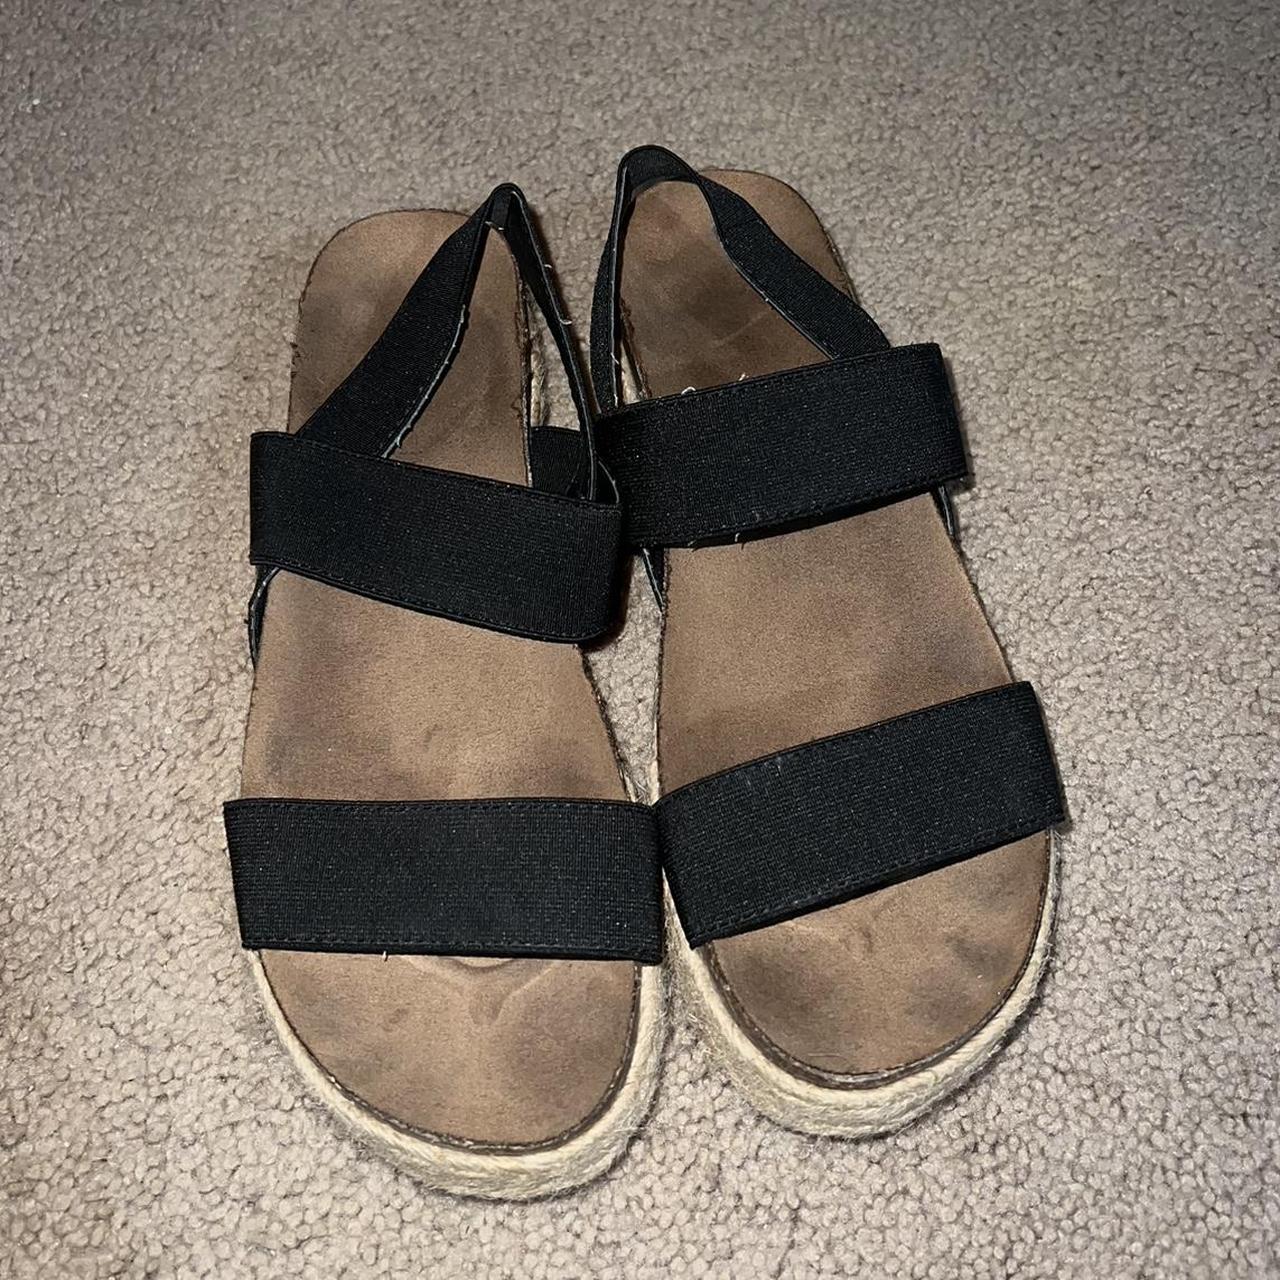 Madden Girl Platform Sandals Size 8 No labels- worn off - Depop